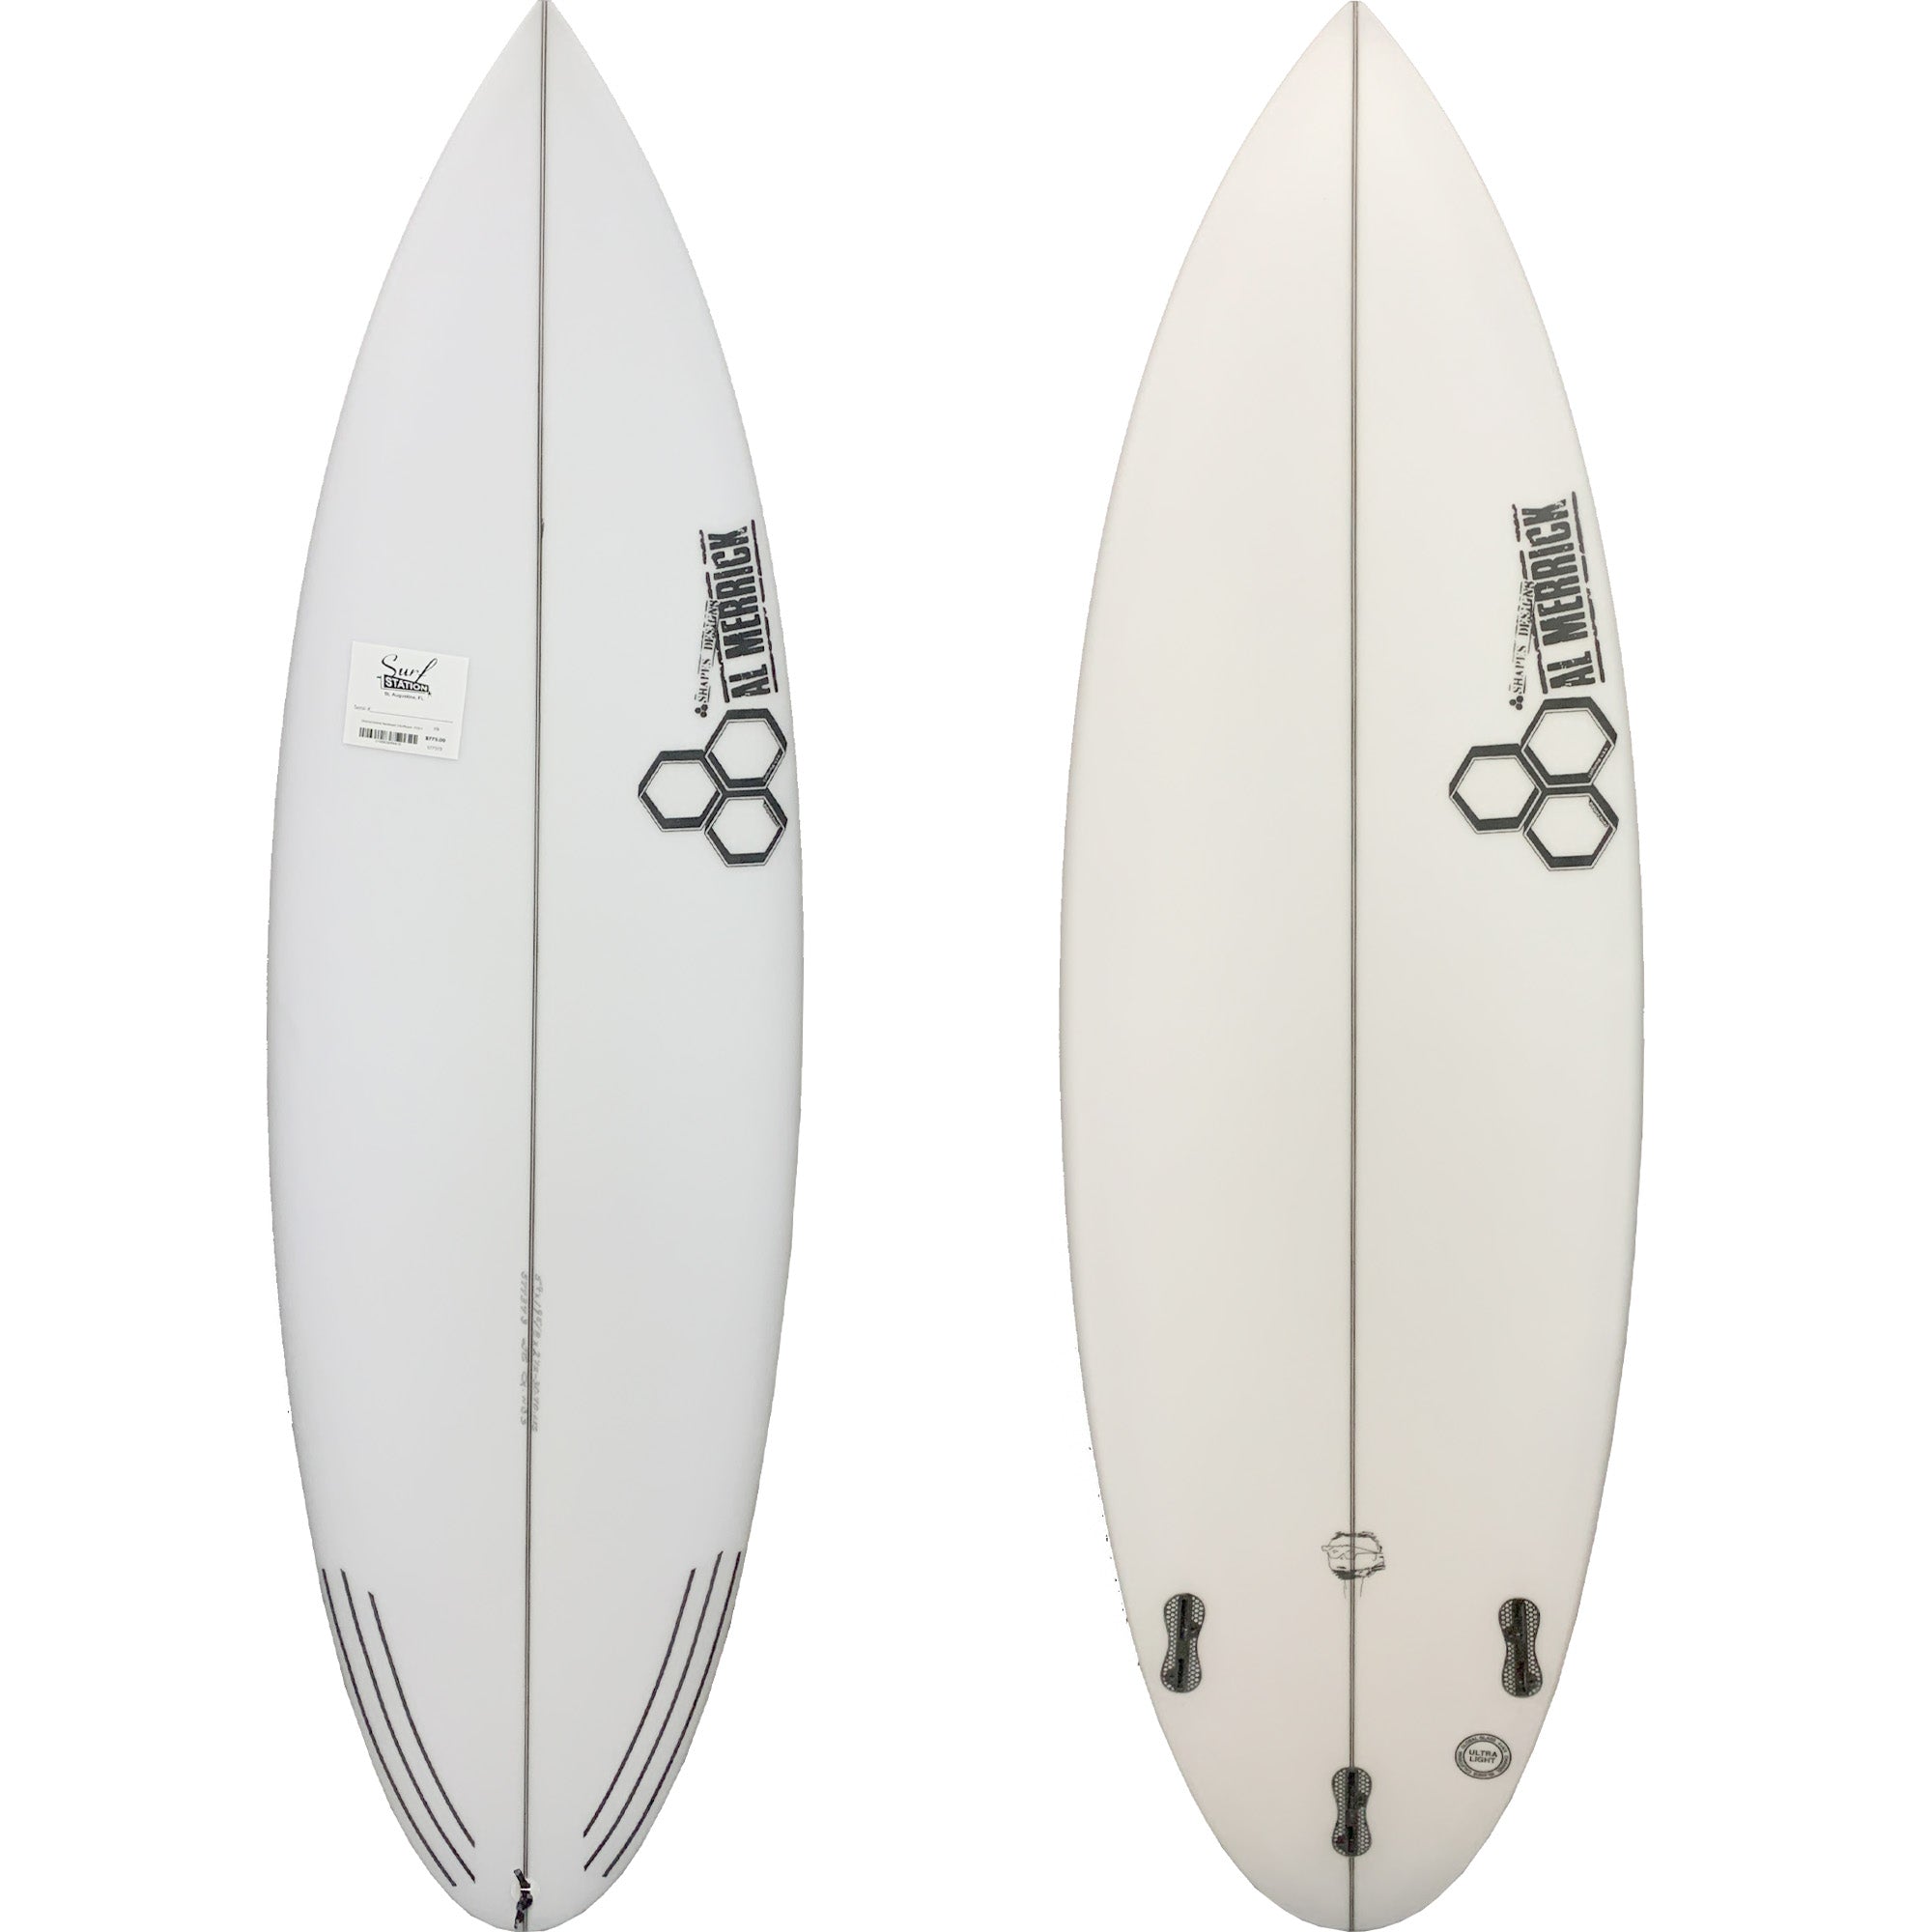 Channel Islands Neckbeard 3 Surfboard - FCS II